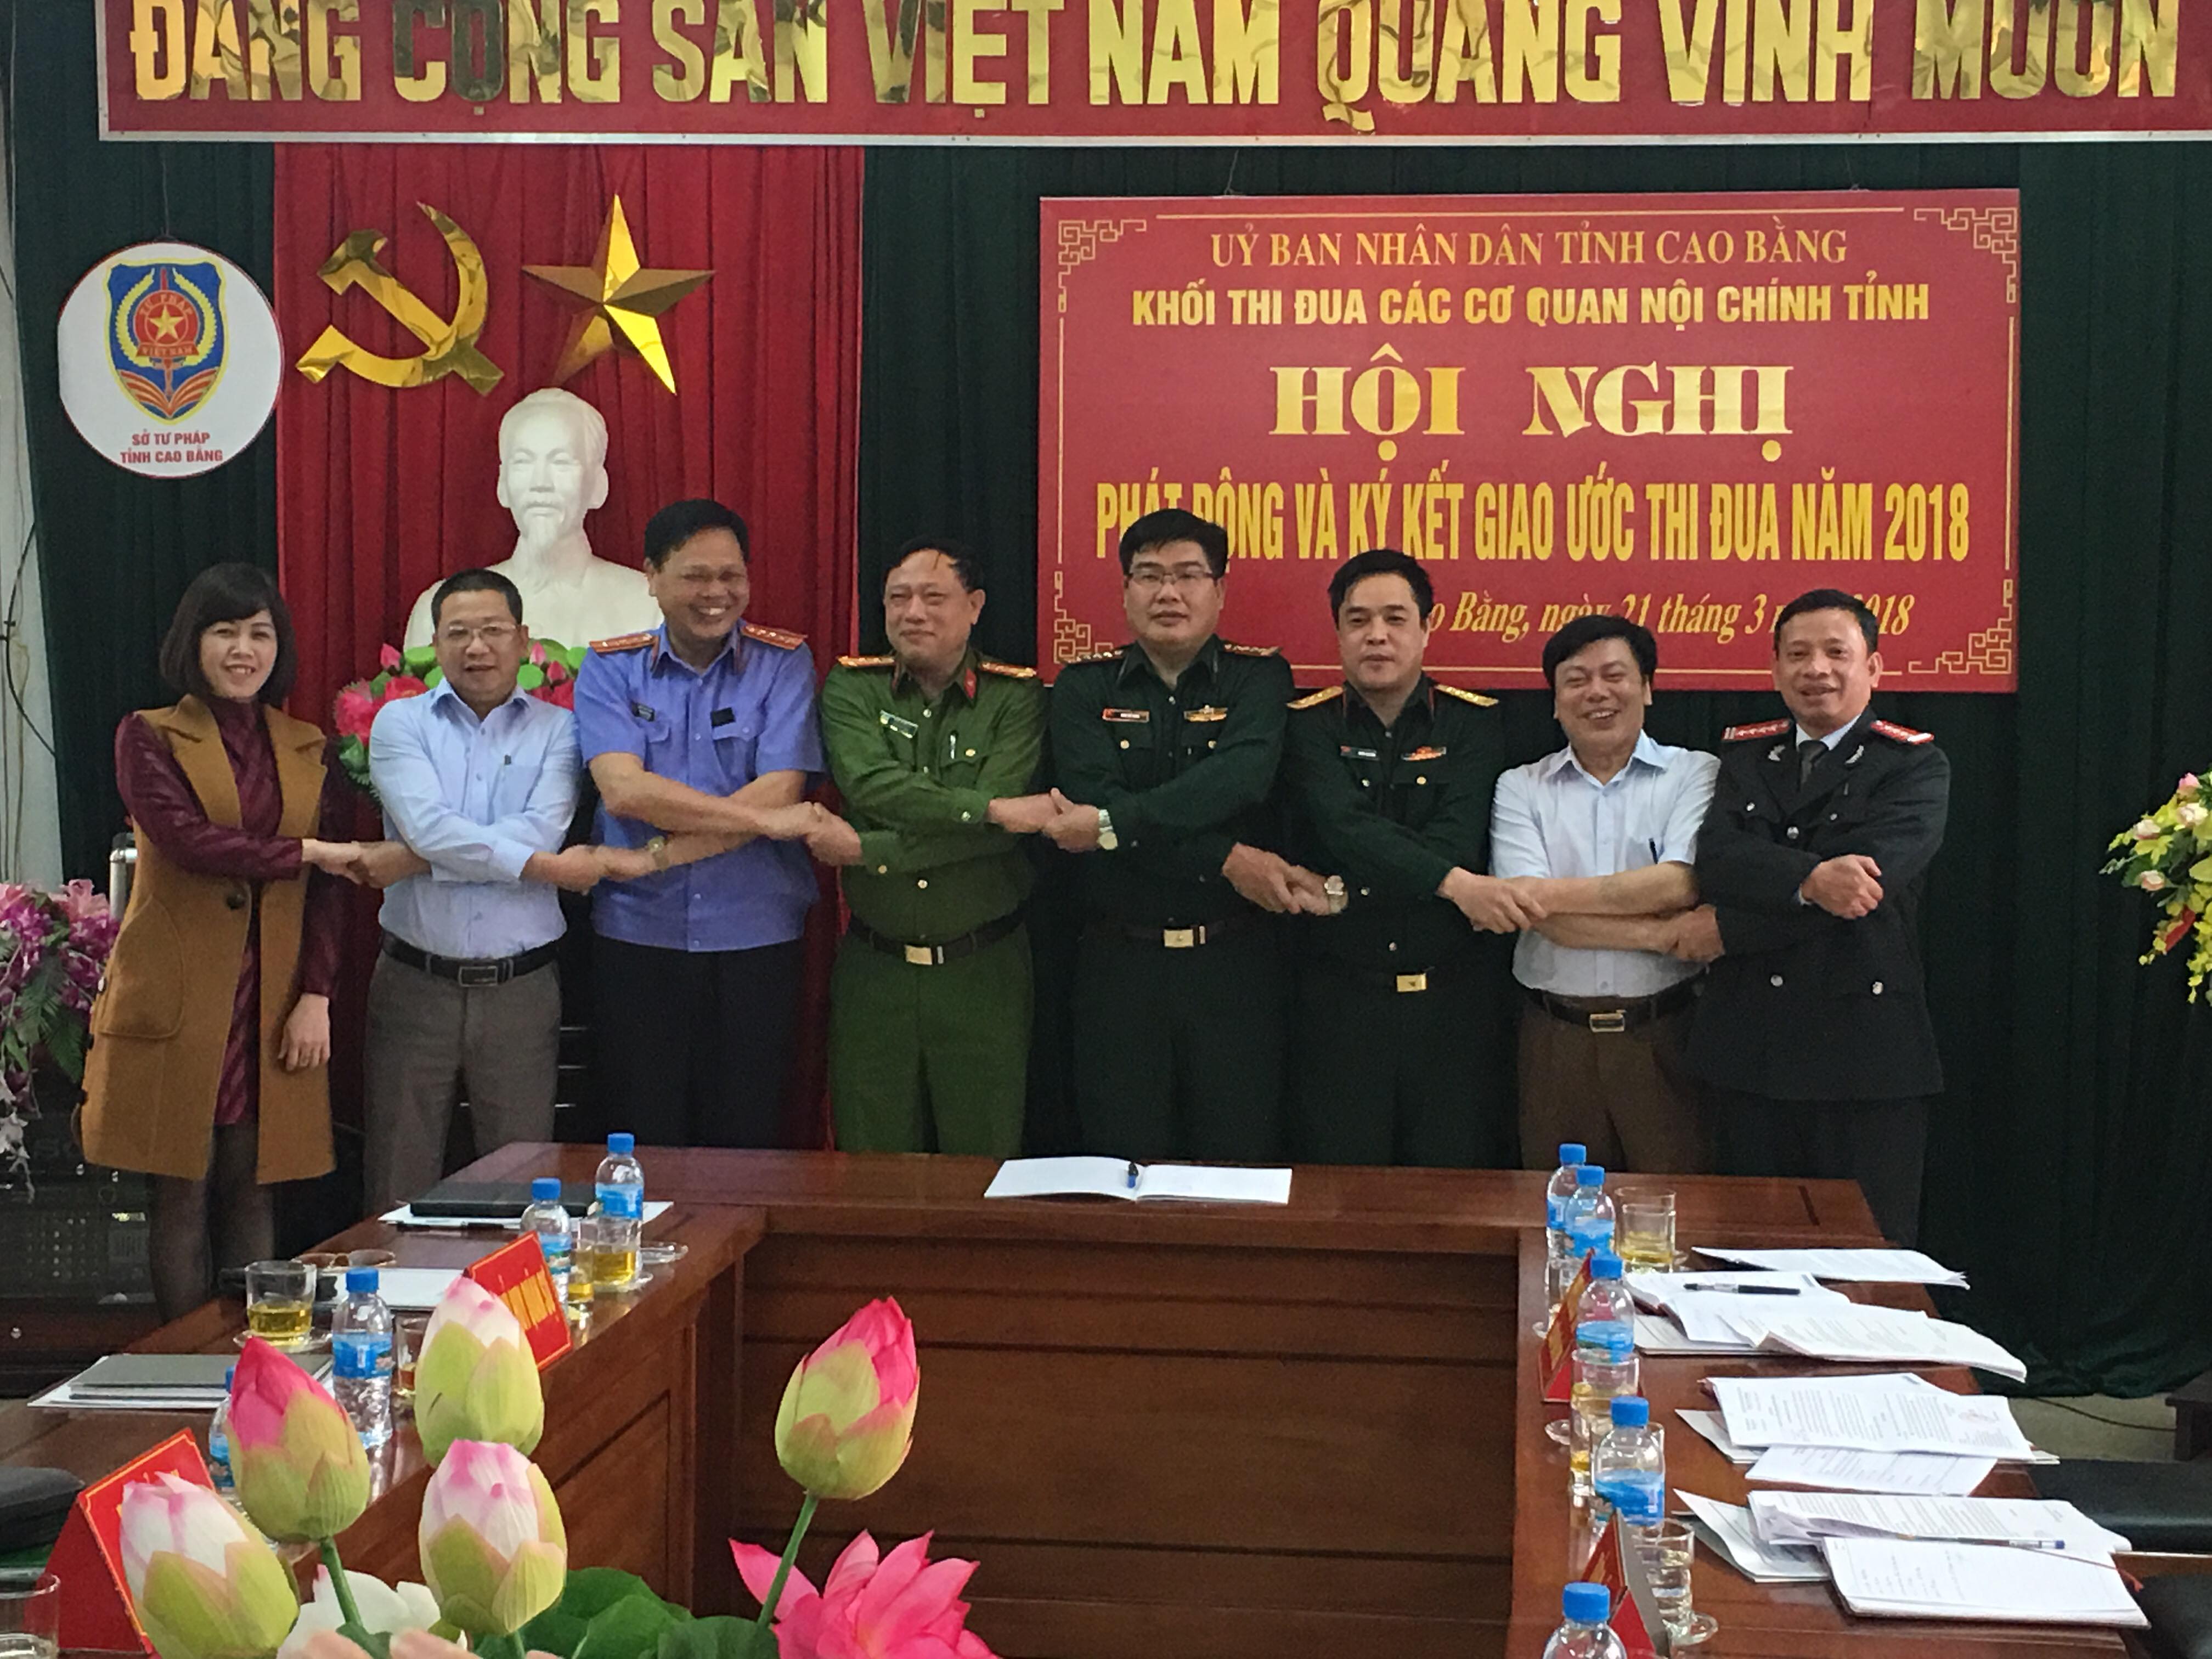 Hội nghị phát động và ký kết giao ước thi đua năm 2018 của Khối thi đua các cơ quan Nội chính tỉnh Cao Bằng